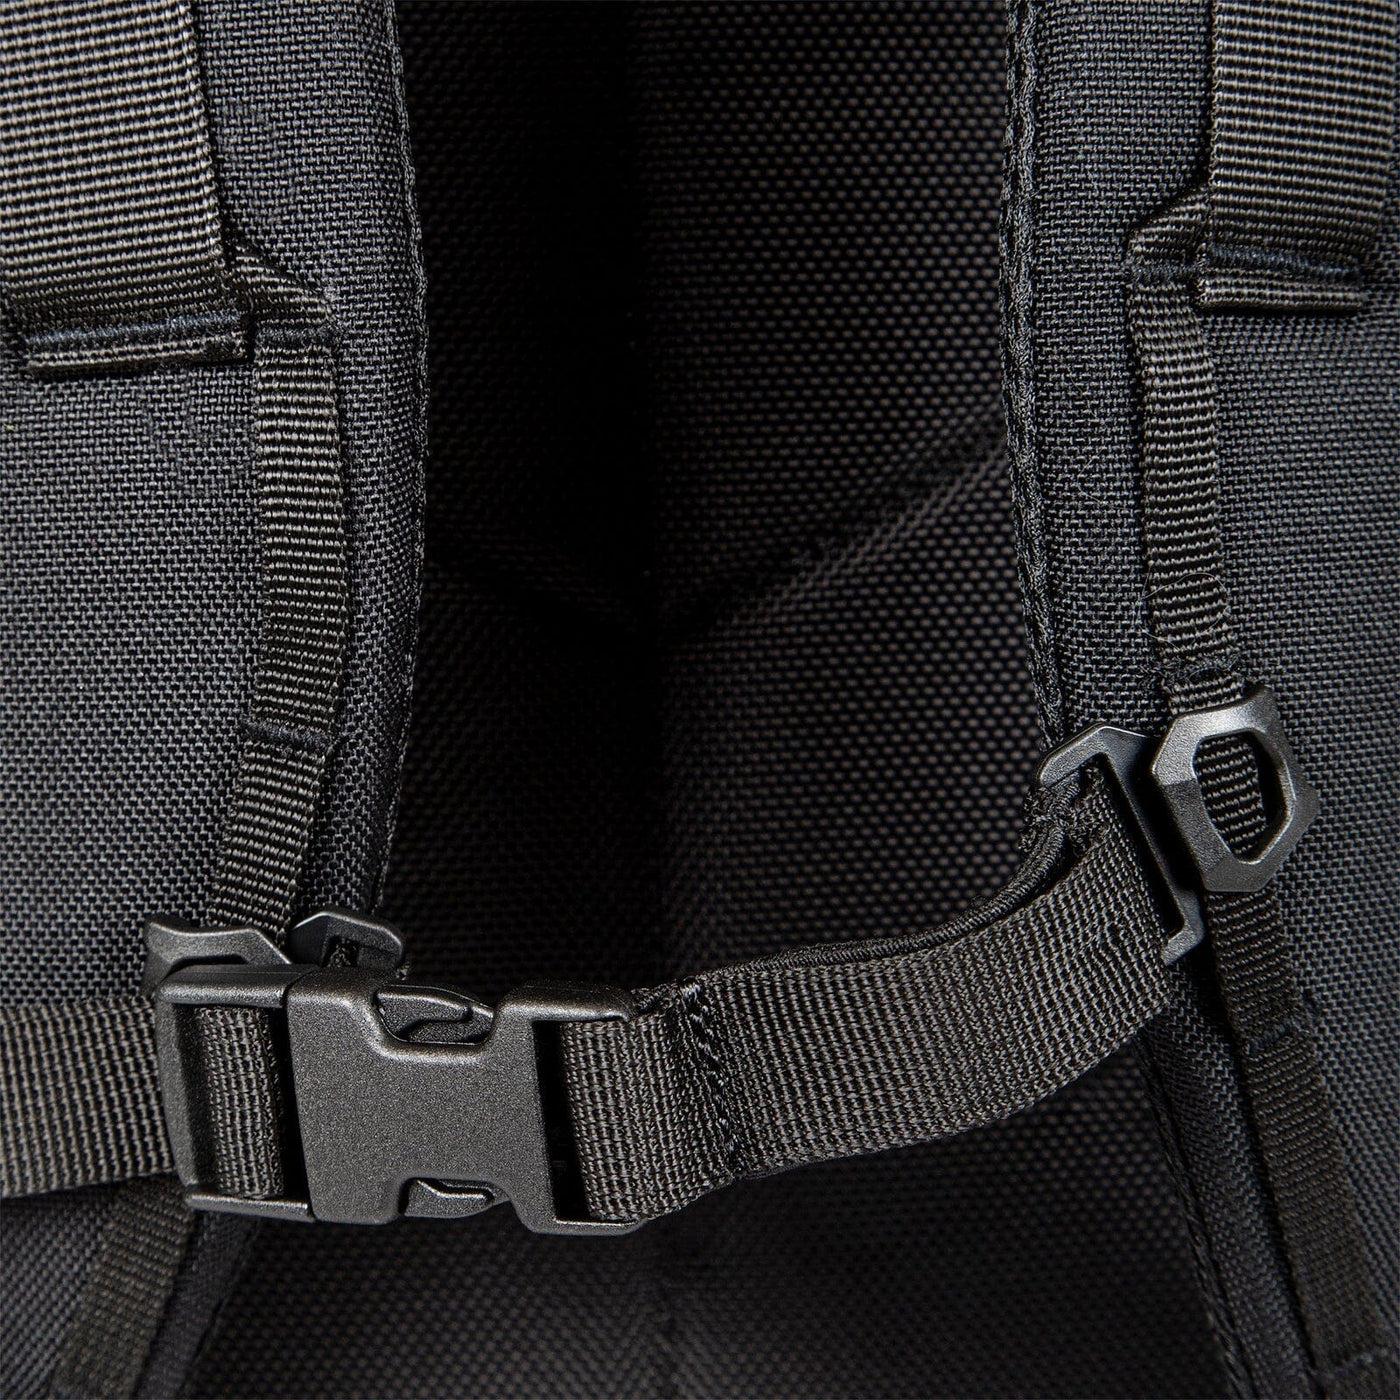 global travel pack close up removable adjustable hip belt